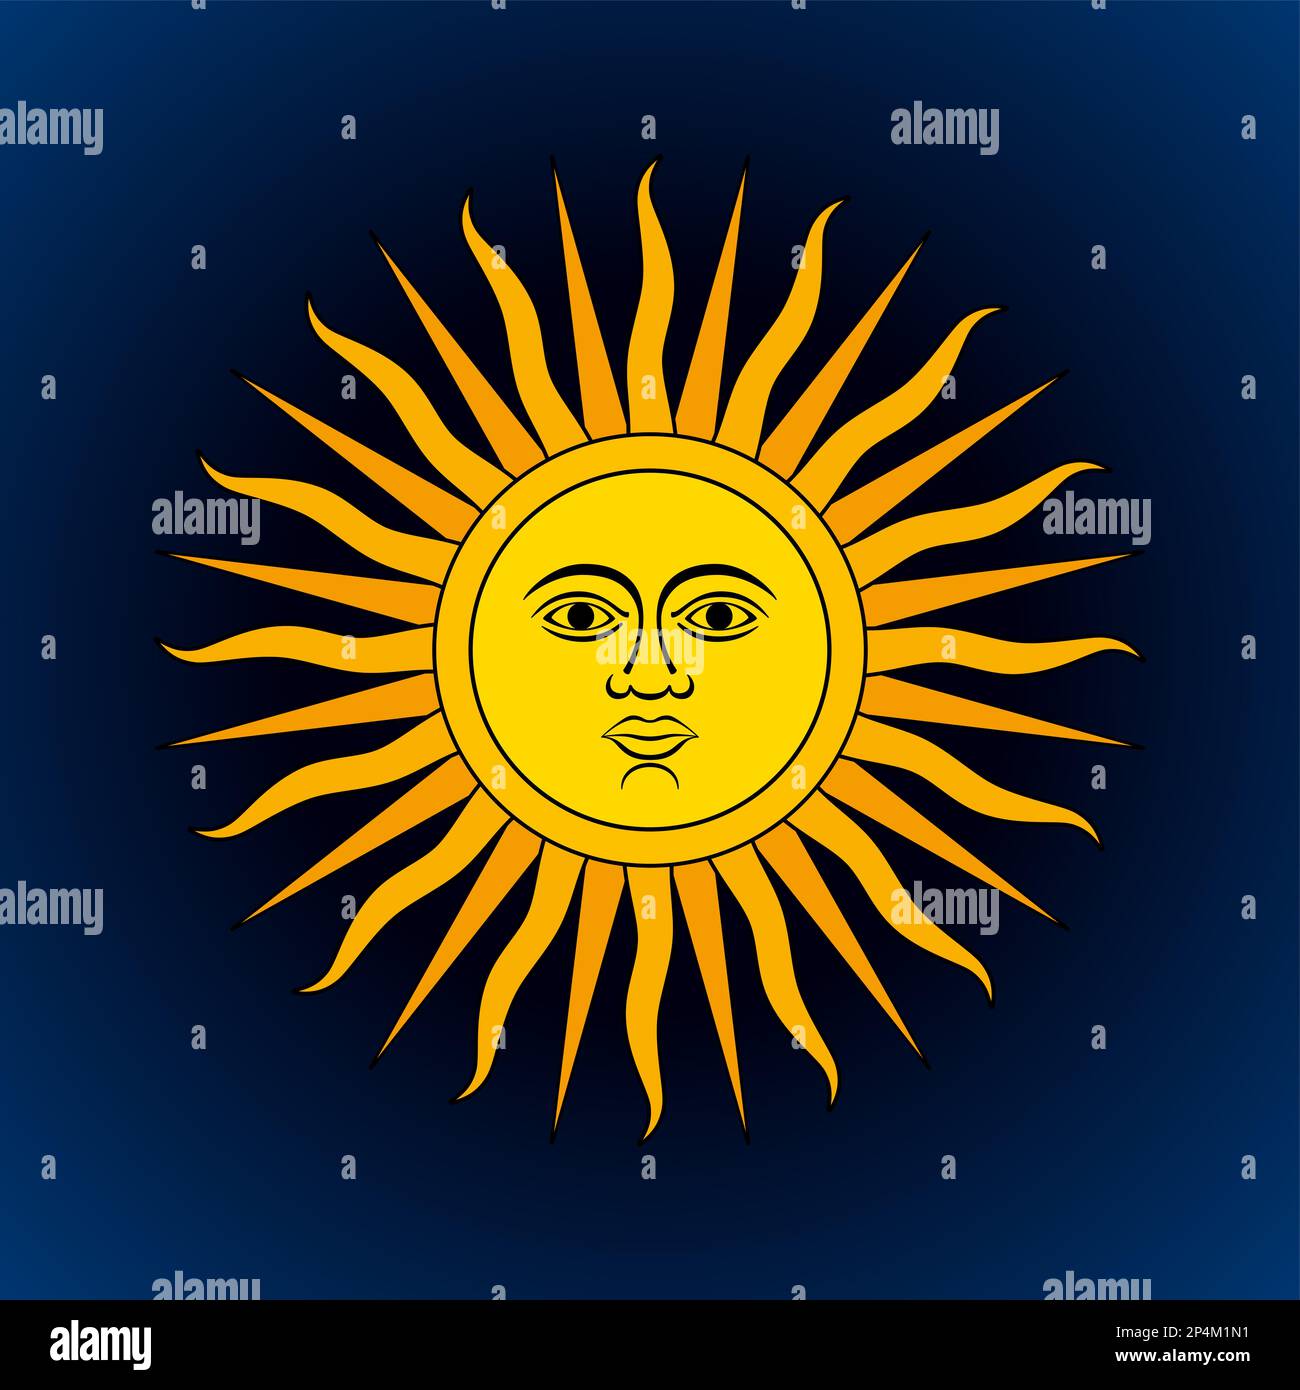 Simbolo del sole su sfondo blu scuro. Analogo al Sole di Maggio, emblema nazionale dell'Argentina e dell'Uruguay. Disco solare giallo dorato radiante. Foto Stock